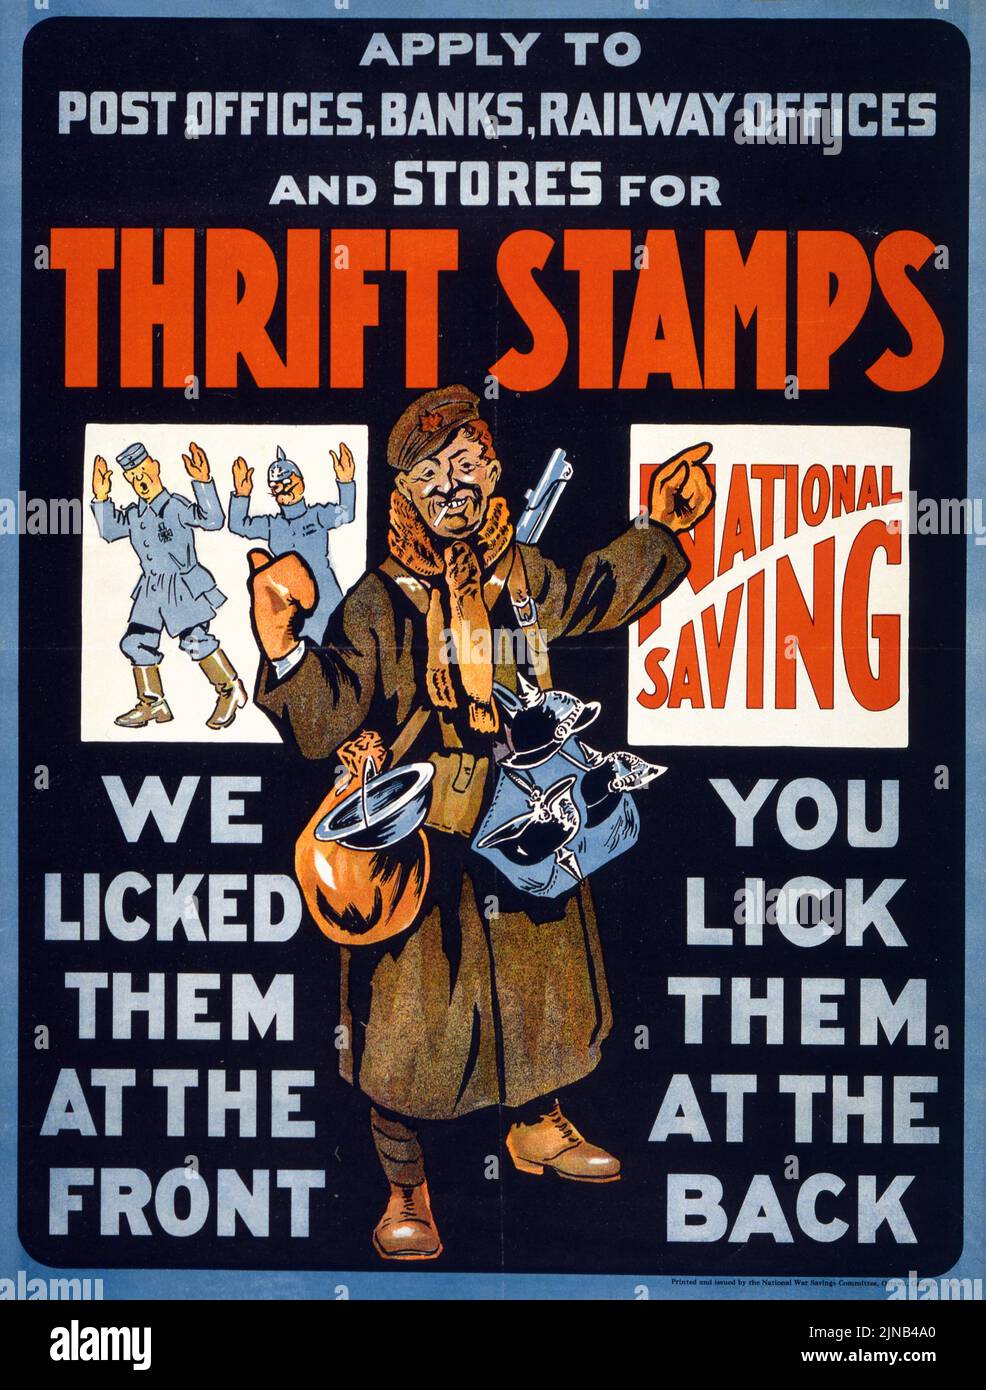 Francobolli Thrift, National Saving, li abbiamo leccati nella parte anteriore, li leccati nella parte posteriore (1915) poster canadese dell'era della prima guerra mondiale Foto Stock